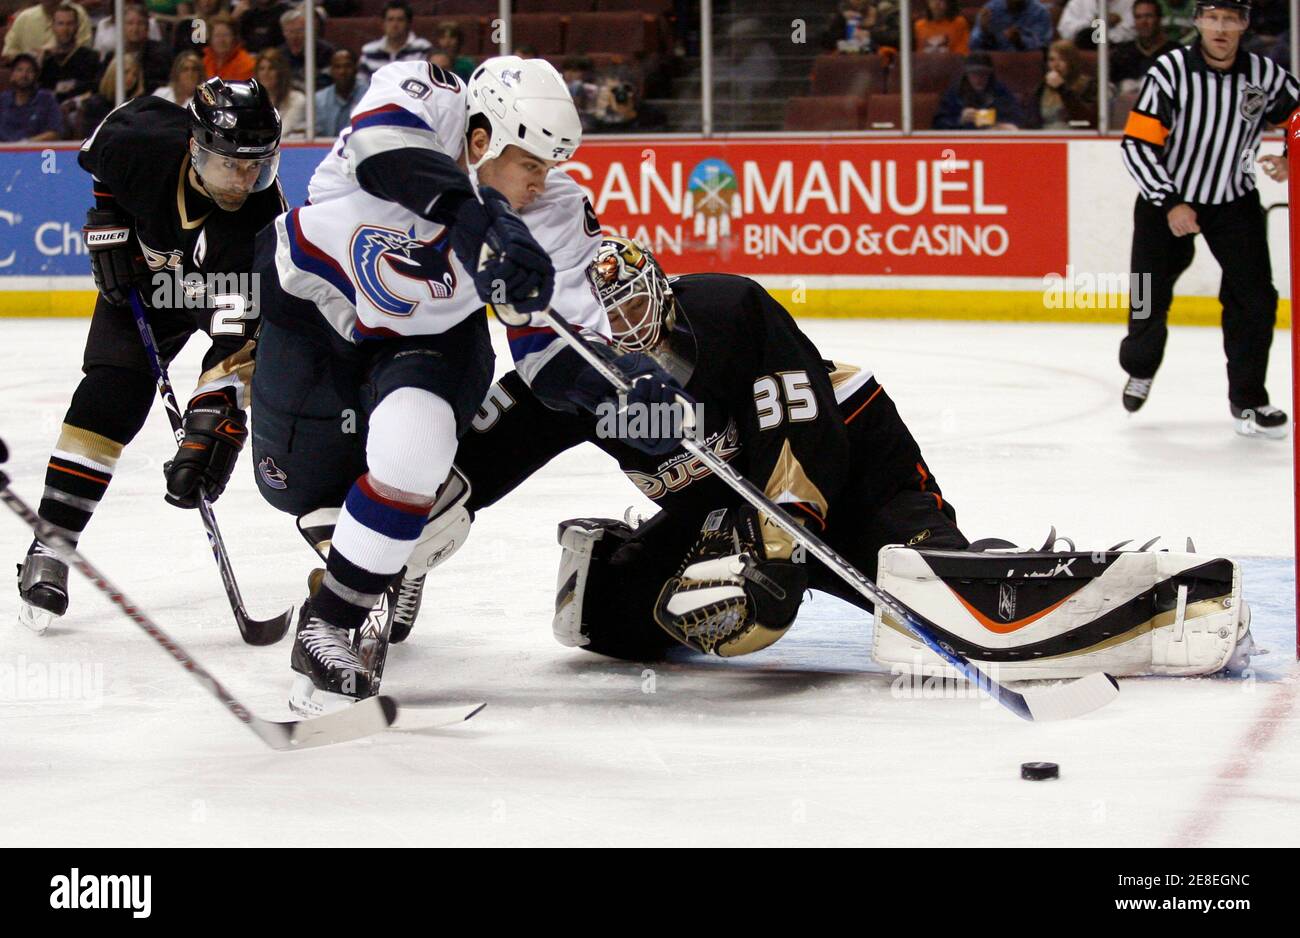 Vancouver Canucks' Taylor Pyatt (C) versucht, eine Vergangenheit Anaheim Ducks Goalie Jean-Sebastien Giguere (R) während der ersten Periode ihres NHL-Eishockey-Spiel in Anaheim 11. März 2007 zu bekommen. REUTERS/Gus Ruelas (USA) Stockfoto